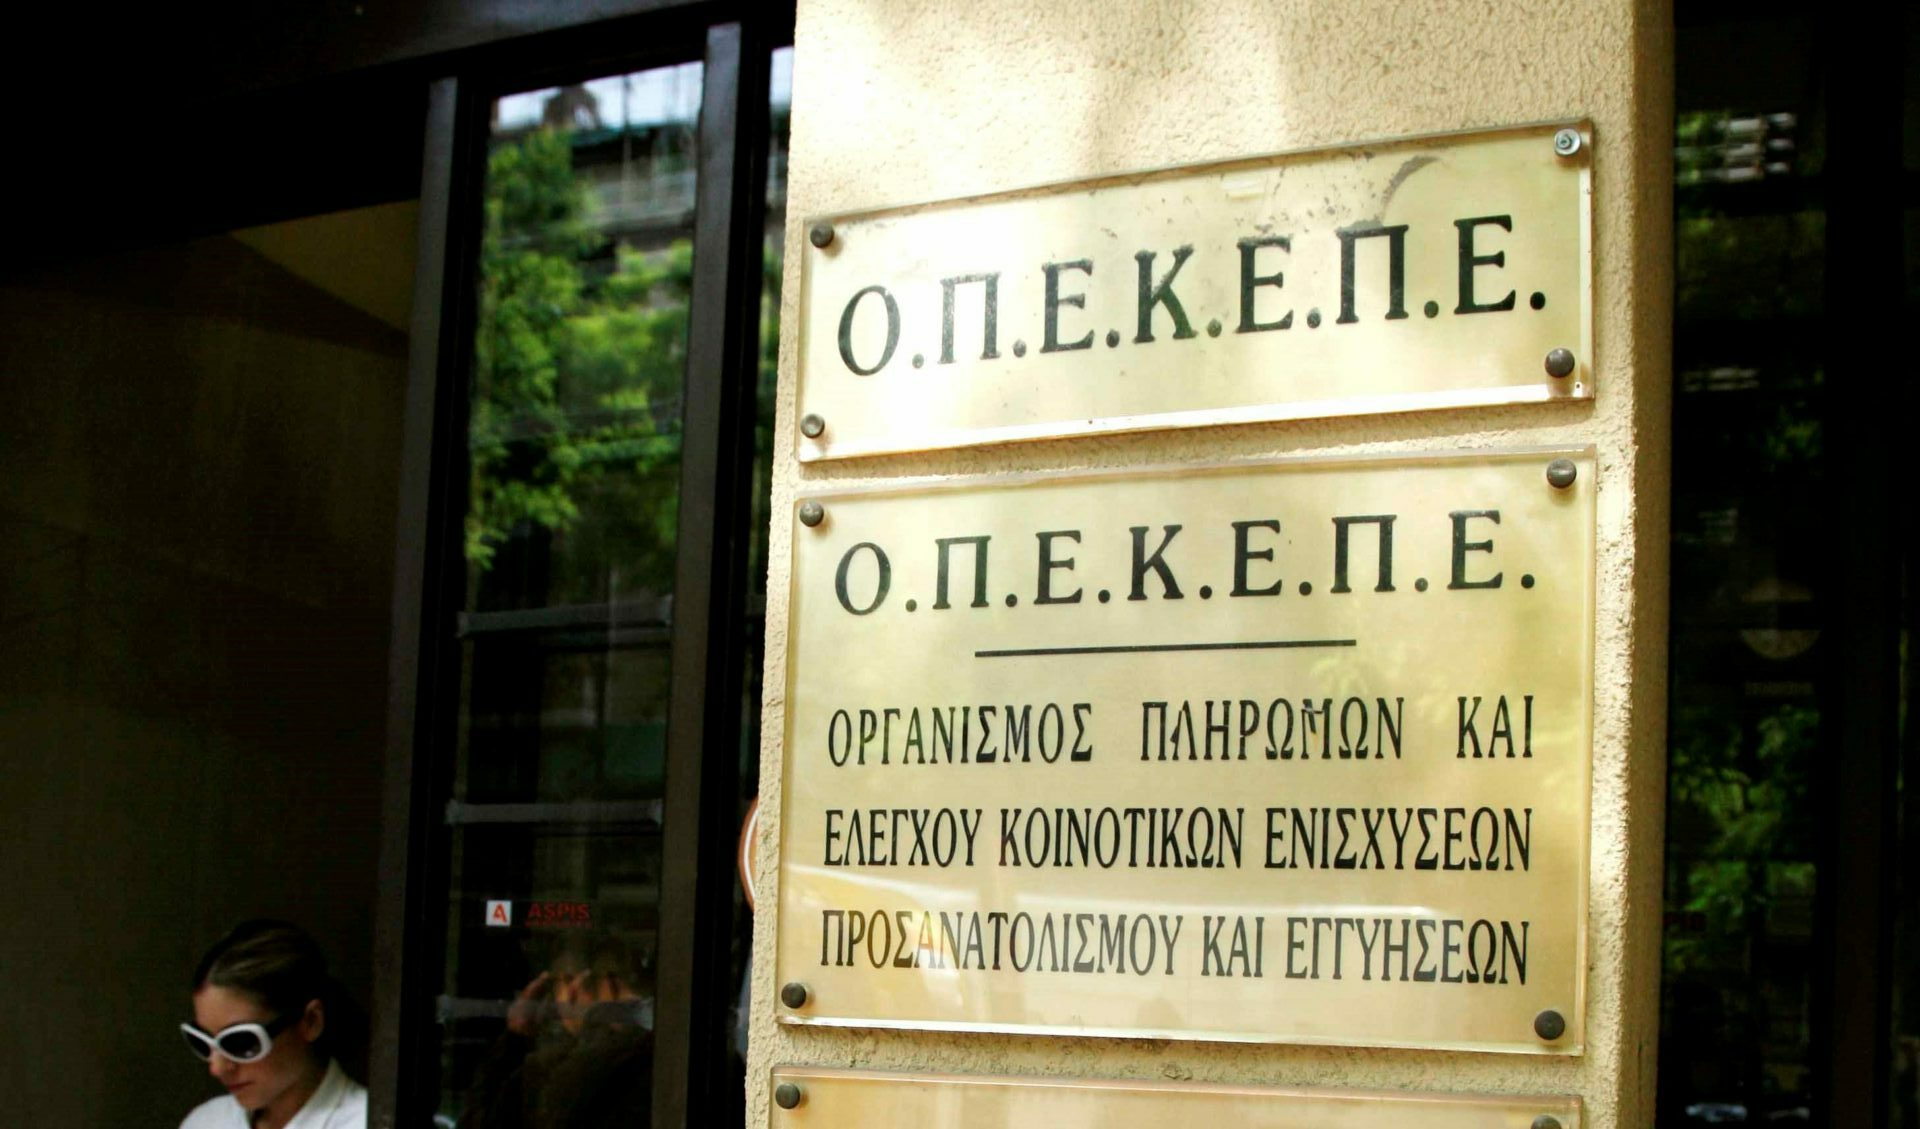 Το κτίριο του Οργανισμού Πληρωμών και Ελέγχου Κοινοτικών Ενυσχίσεων Προσανατολισμού και Εγγυήσεων / ΟΠΕΚΕΠΕ © Eurokinissi